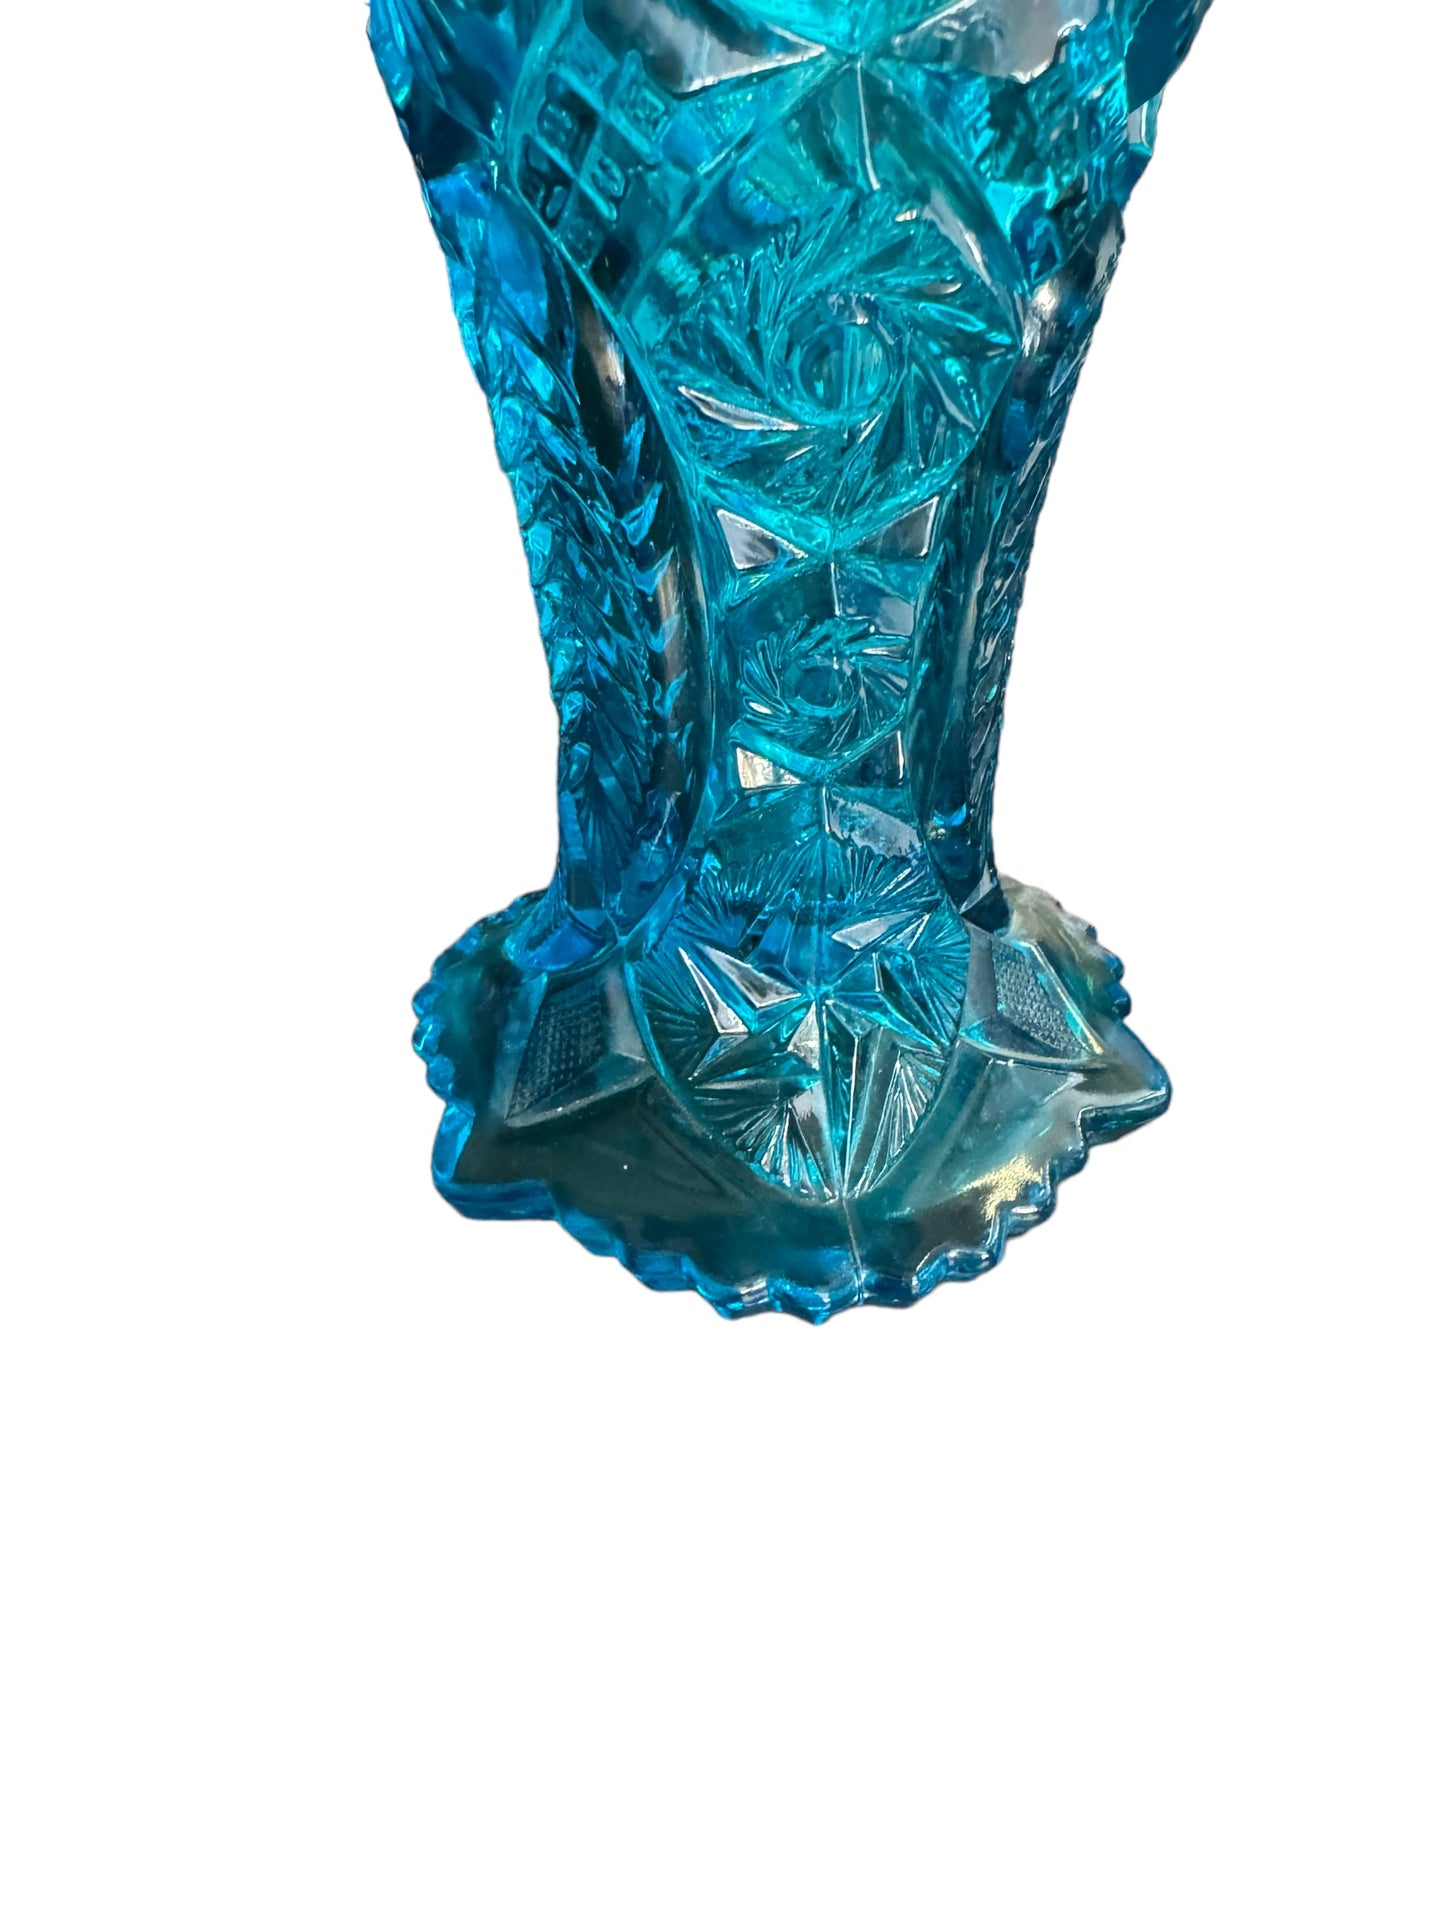 EAPG Blue Glass 9" Vase